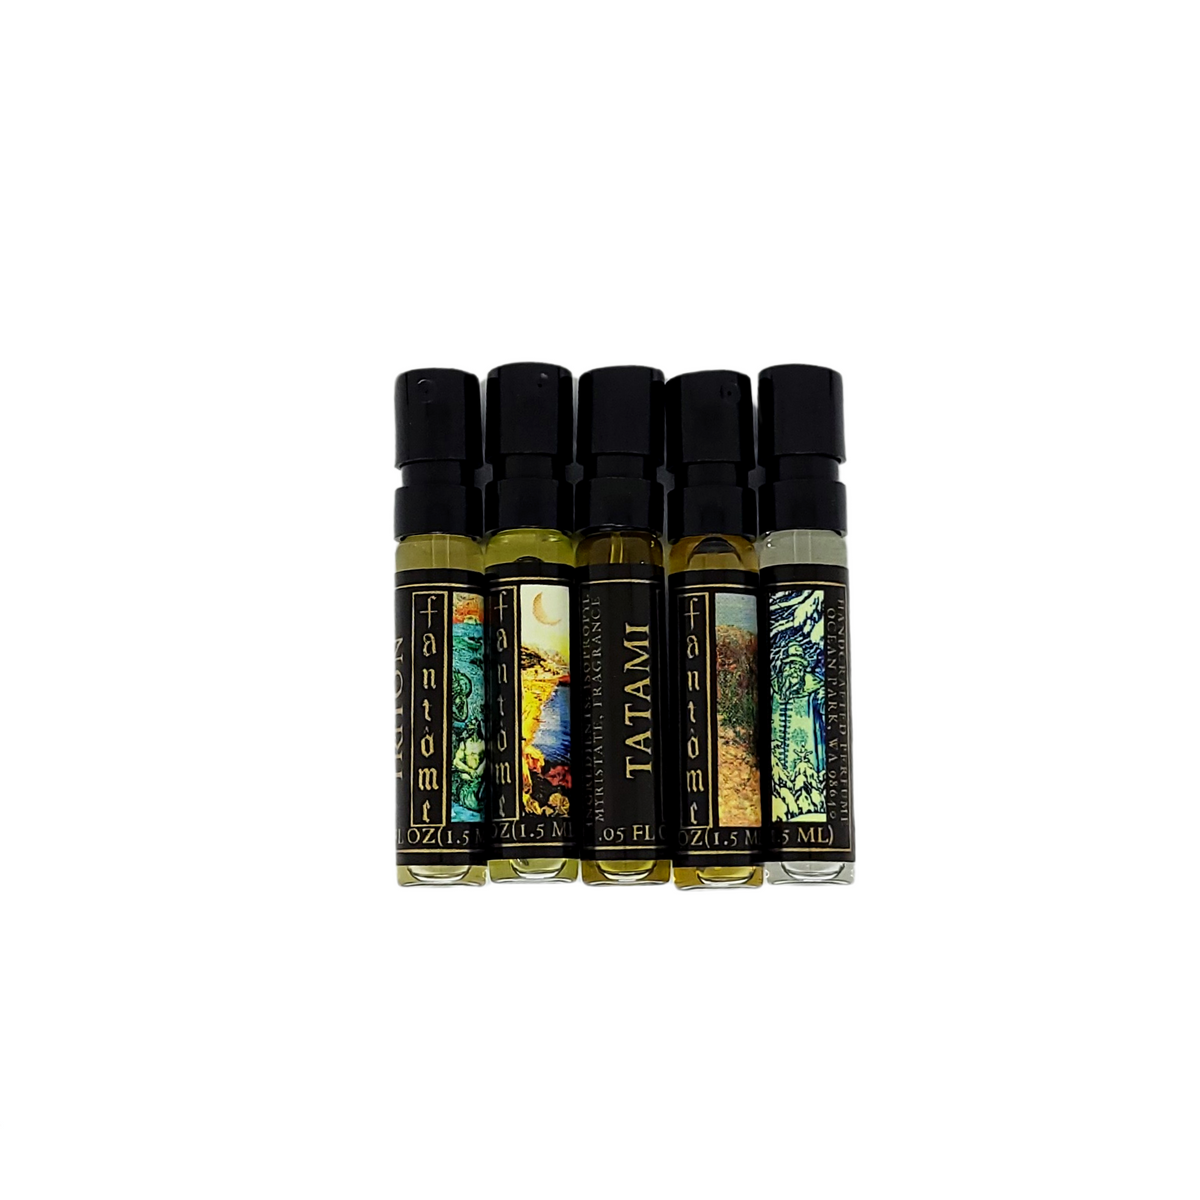 Sample Pack Extrait de Parfum - Choose 5 - Perfume Oil by Fantôme